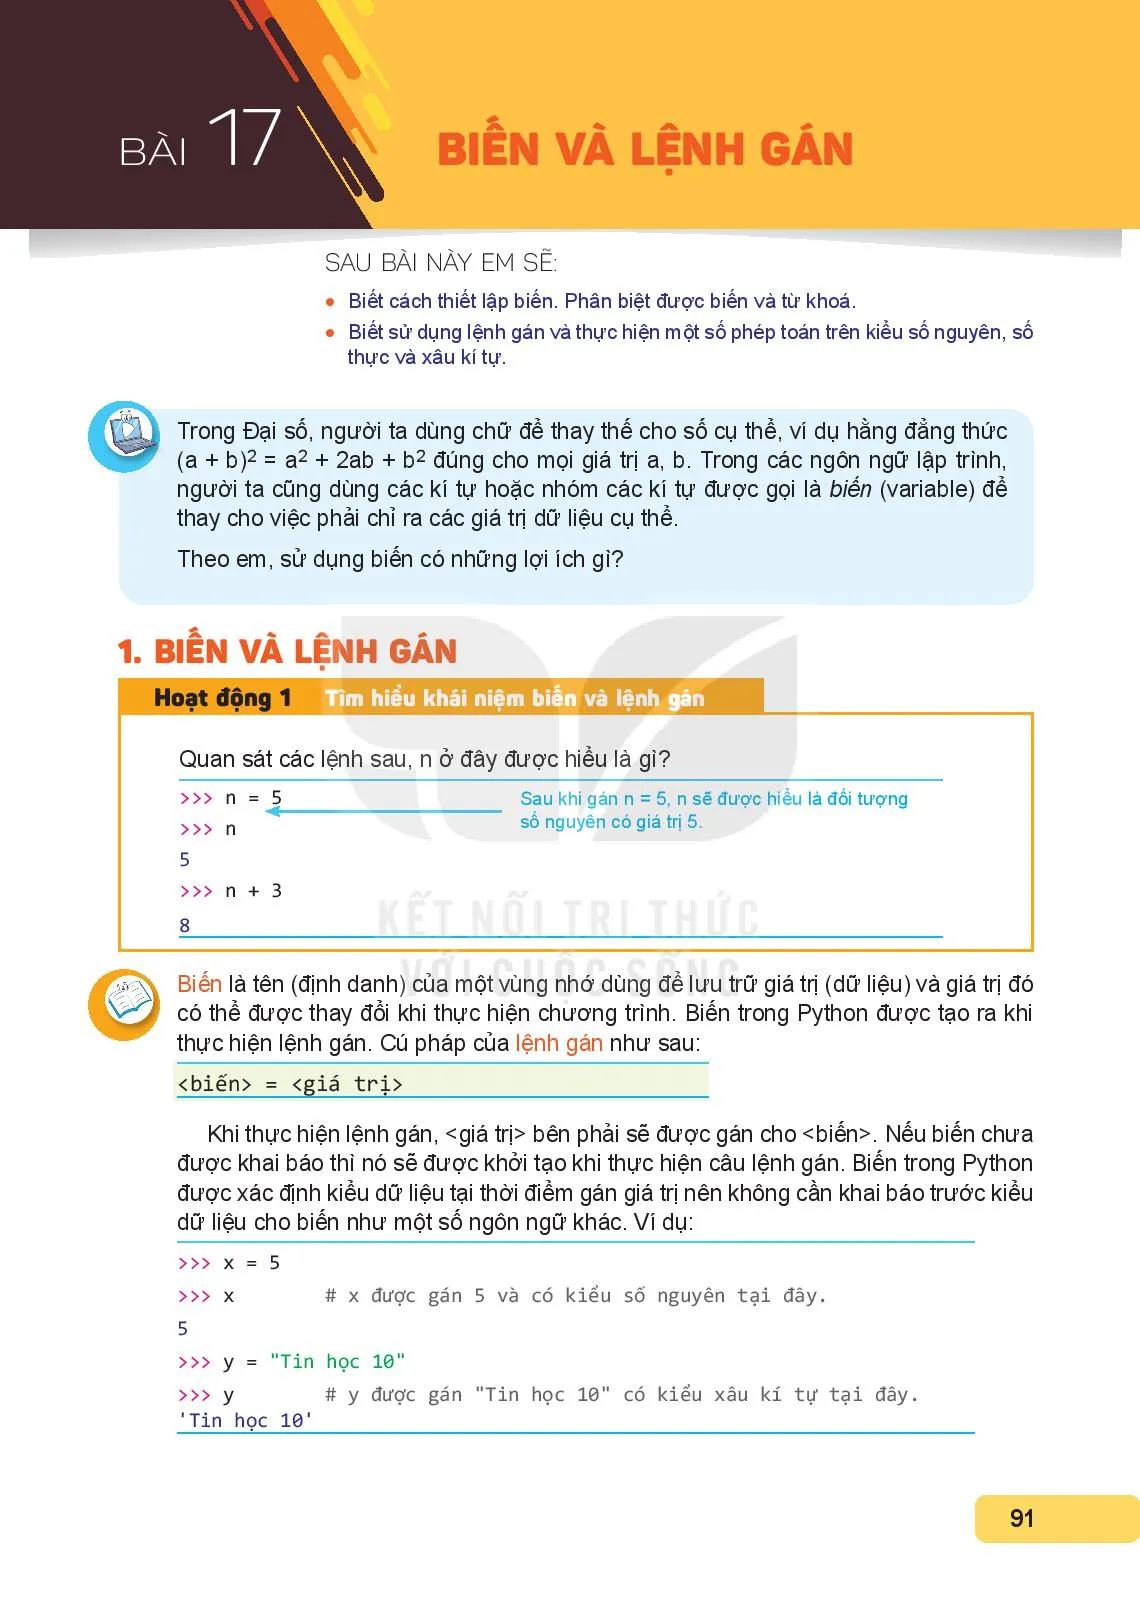 Bài 16. Ngôn ngữ lập trình bậc cao và Python